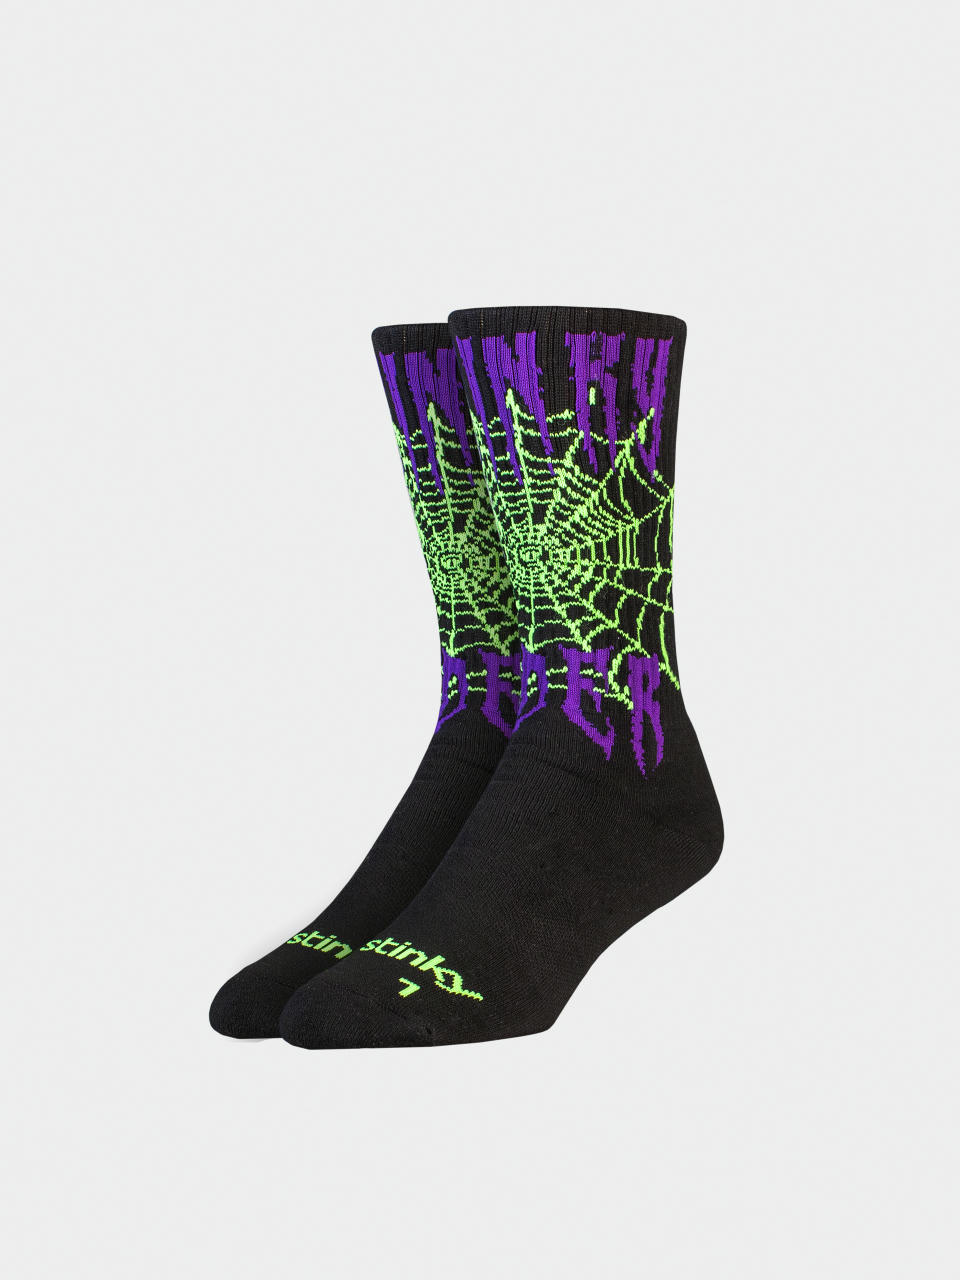 Stinky Socks Socken Vader (black/purple/green)